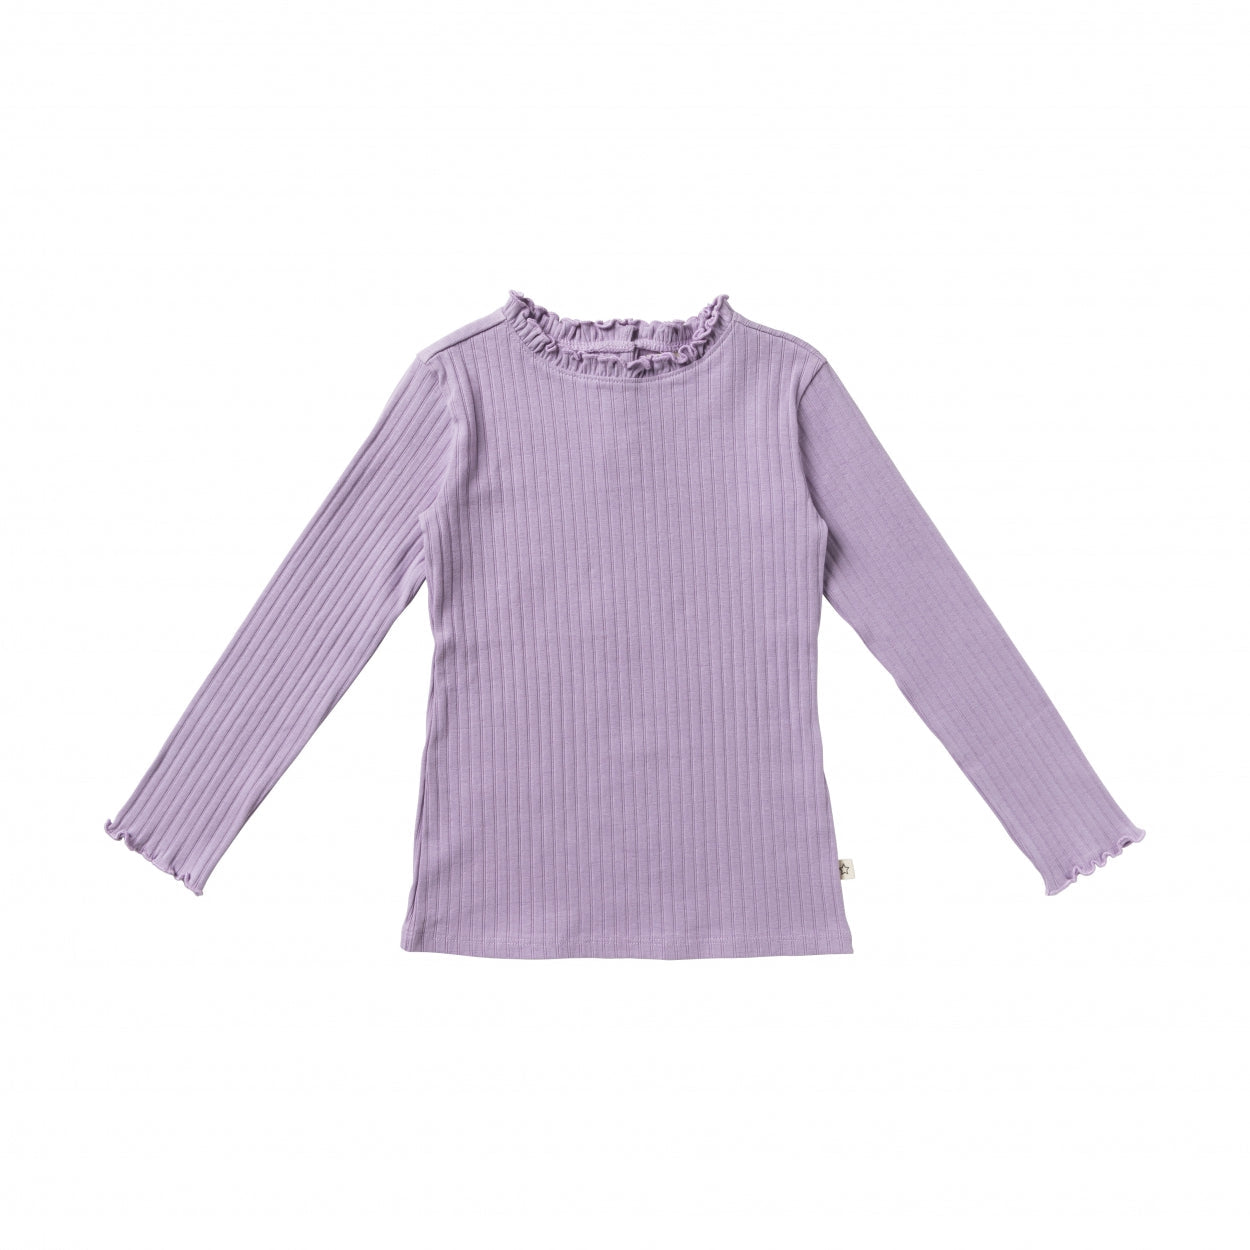 Meisjes Shirt Twin Rib | Jade van Your Wishes in de kleur Lavender in maat 122-128.